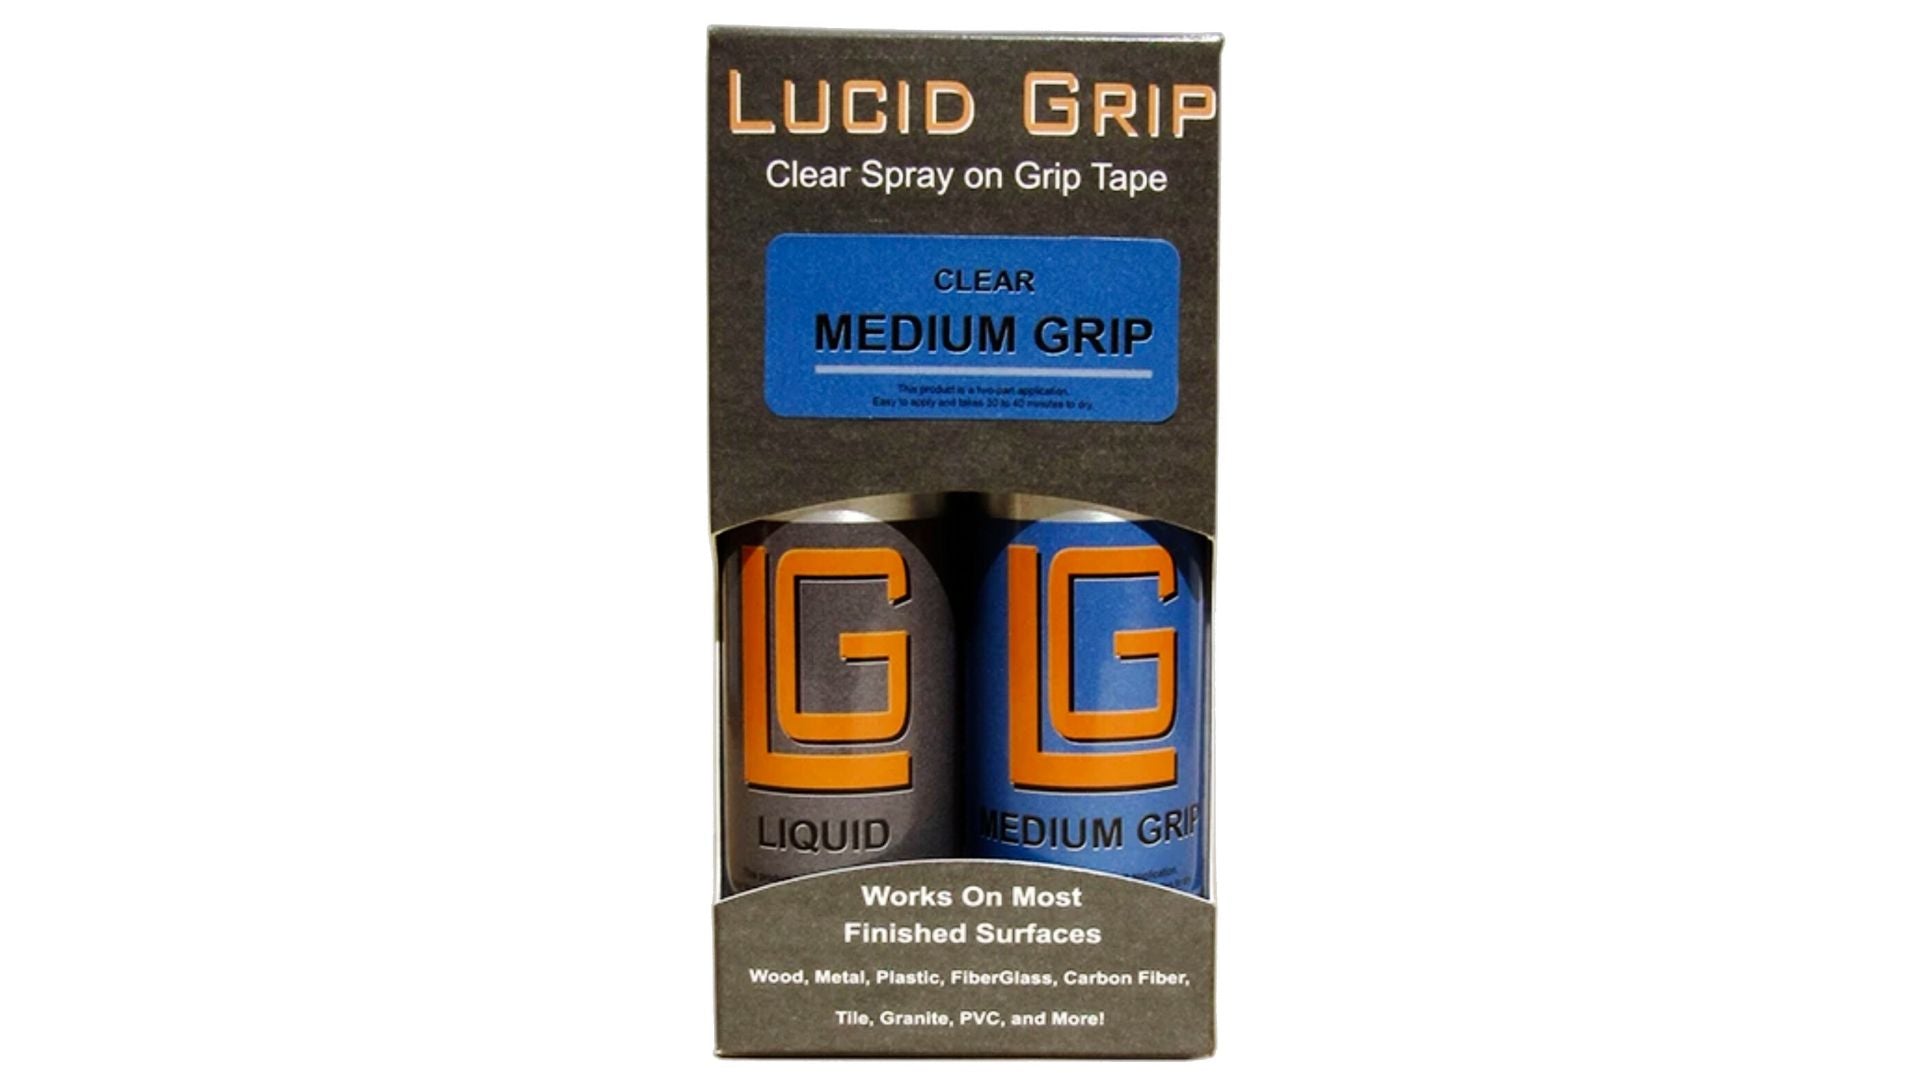 Spray de Limpeza e Grip Tape Transparente - Lucid Grip